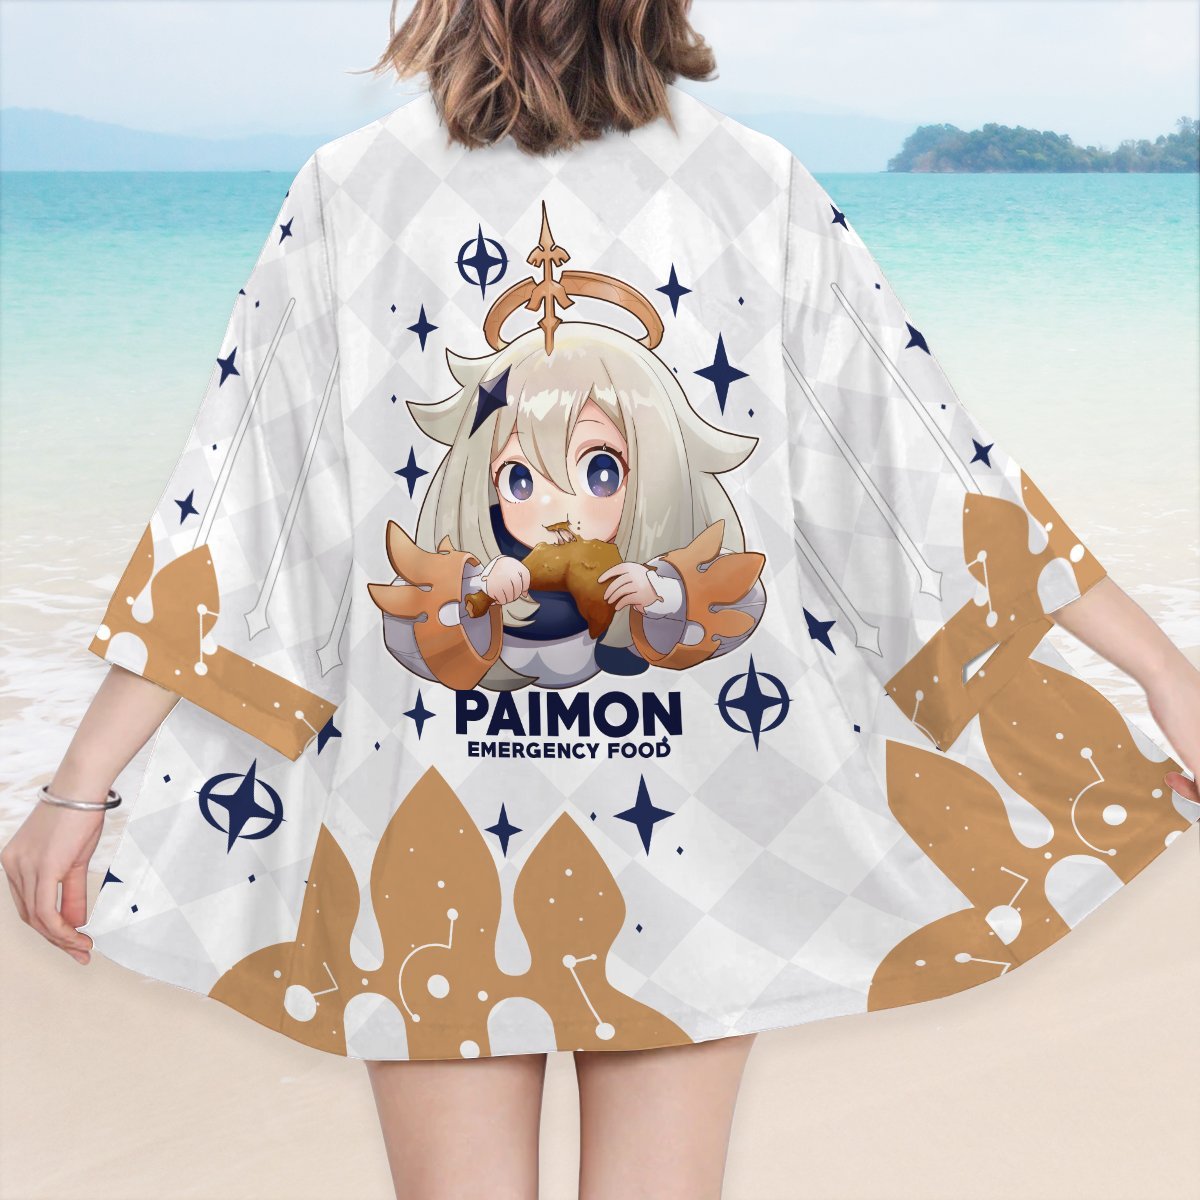 paimon kimono 556399 - Otaku Treat